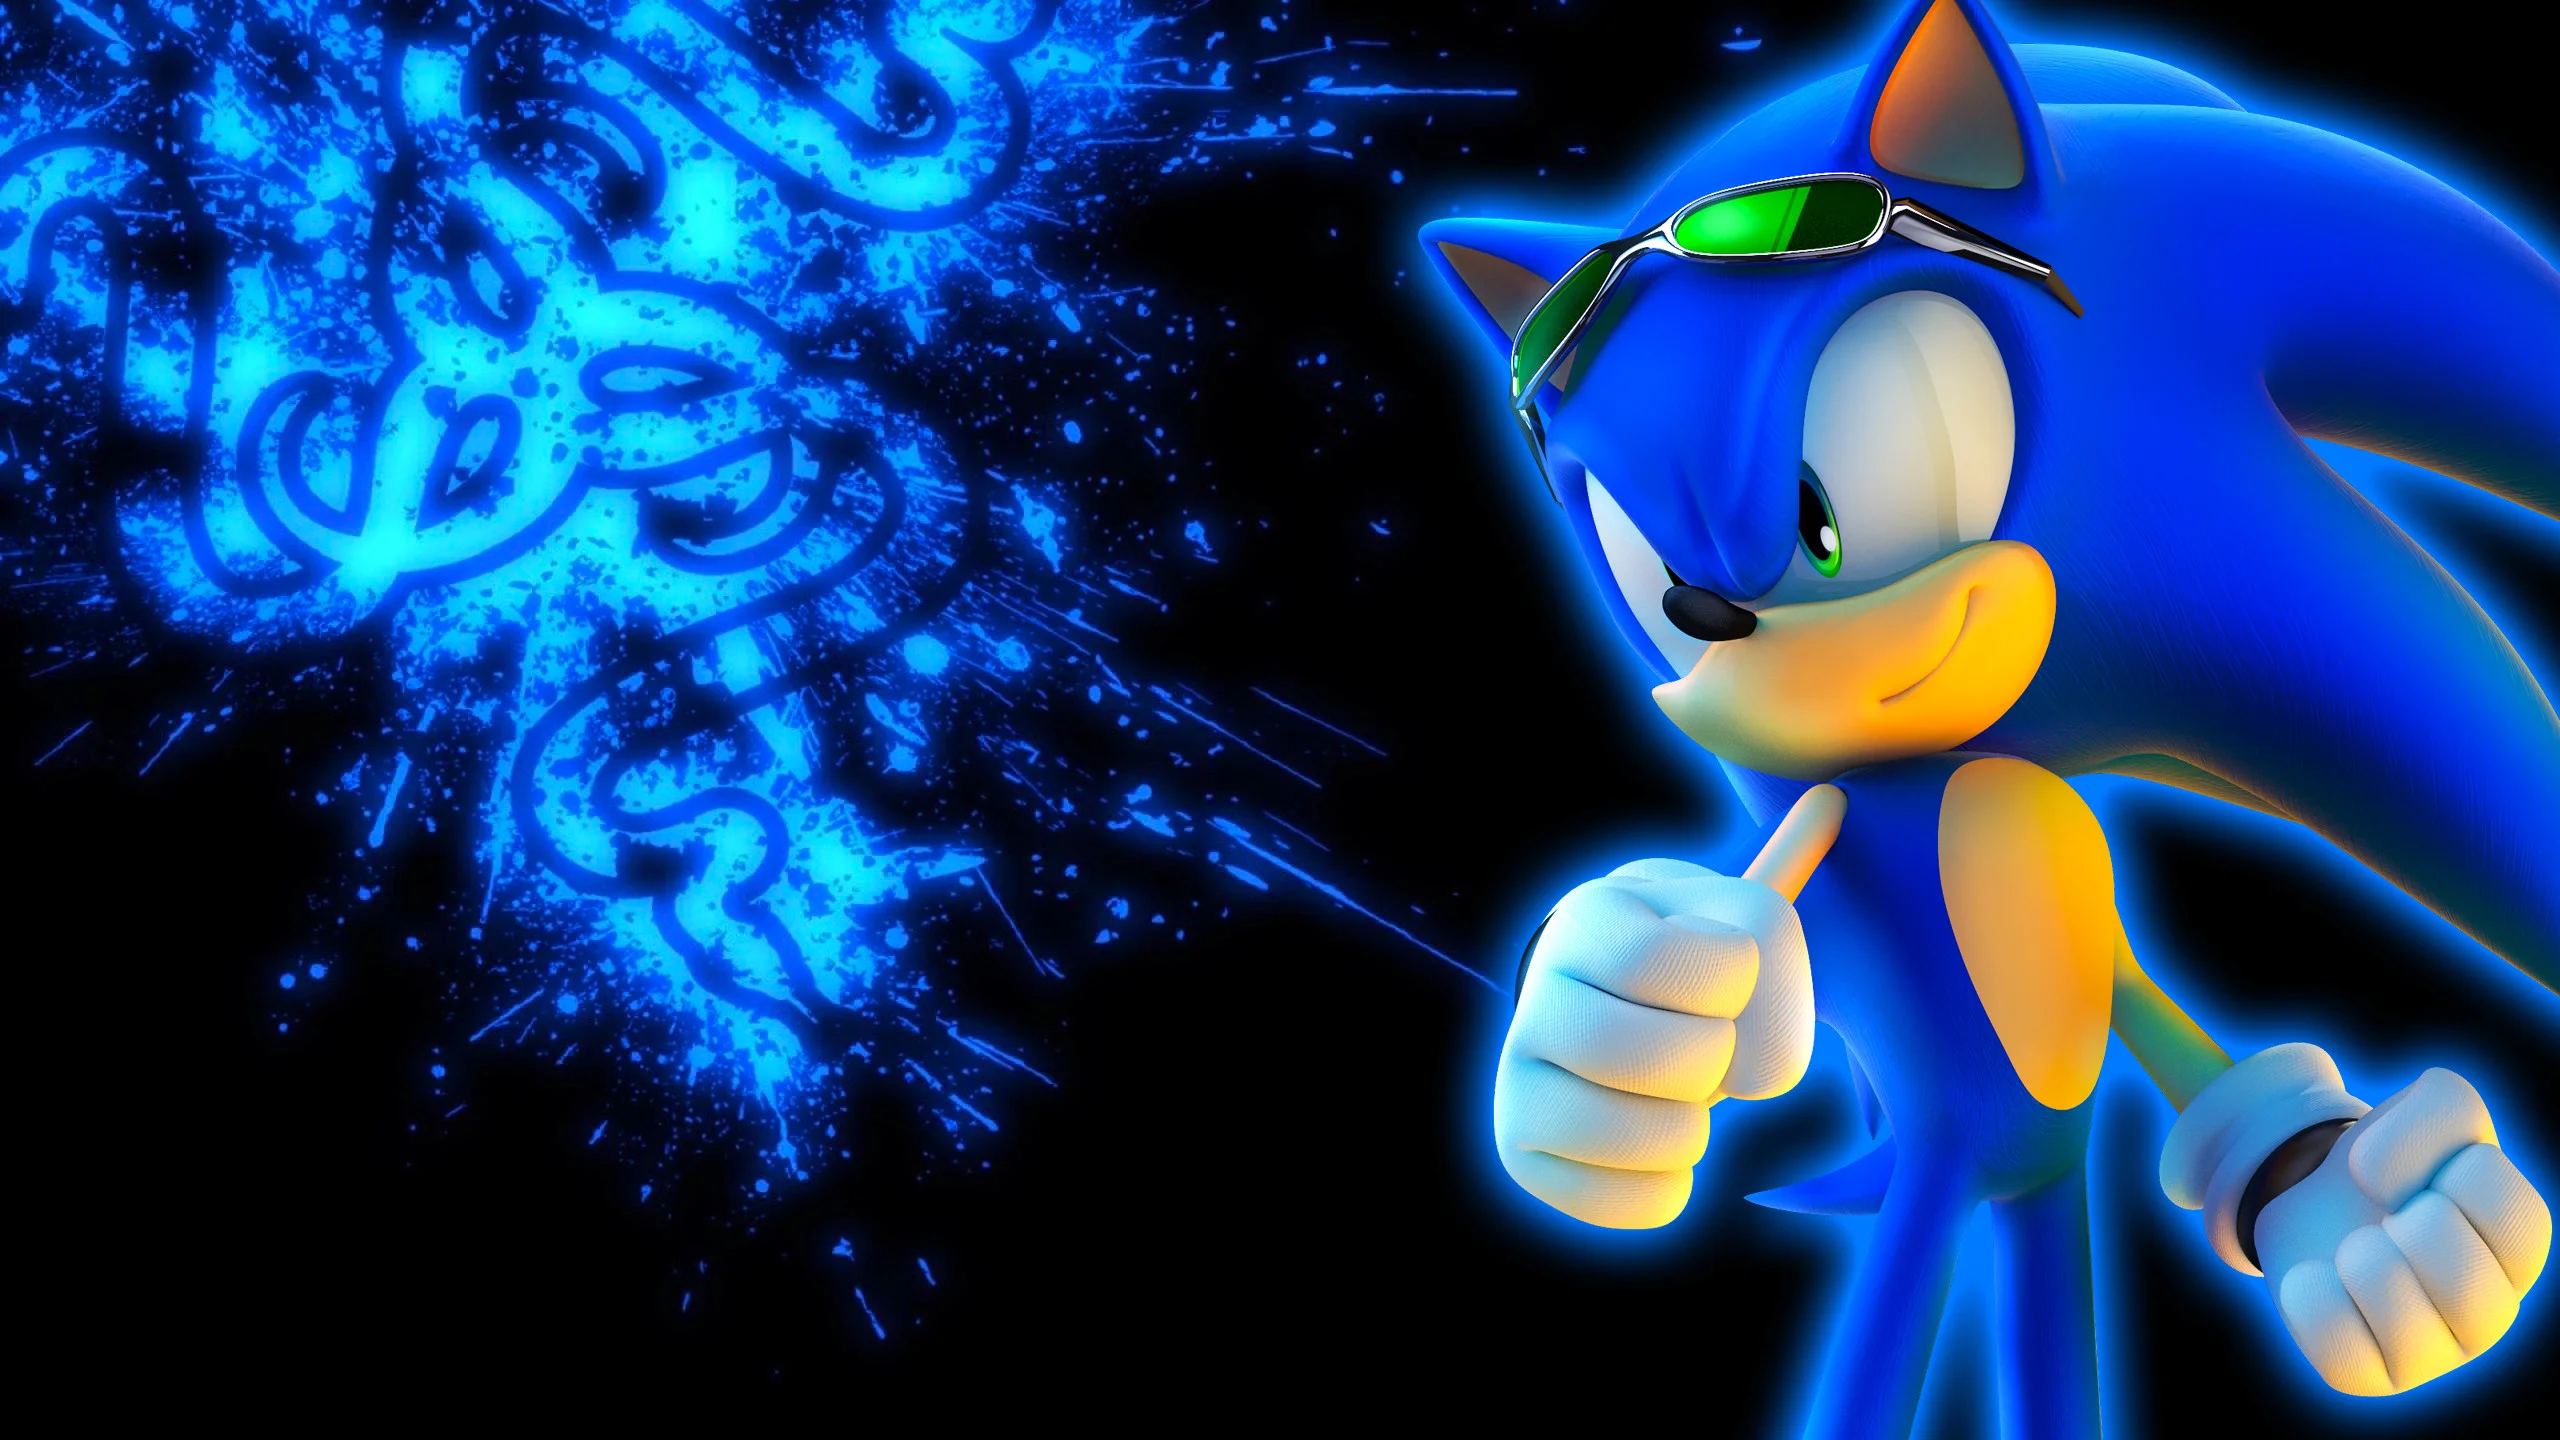 Sonic hình nền: Tượng trưng cho tinh thần trẻ trung và năng động, hình nền Sonic là một lựa chọn tuyệt vời để thúc đẩy sự sáng tạo cho người dùng. Với các hình ảnh Sonic đầy truyền cảm hứng, bạn chắc chắn sẽ yêu thích những gì mà hình nền này mang đến cho bạn.